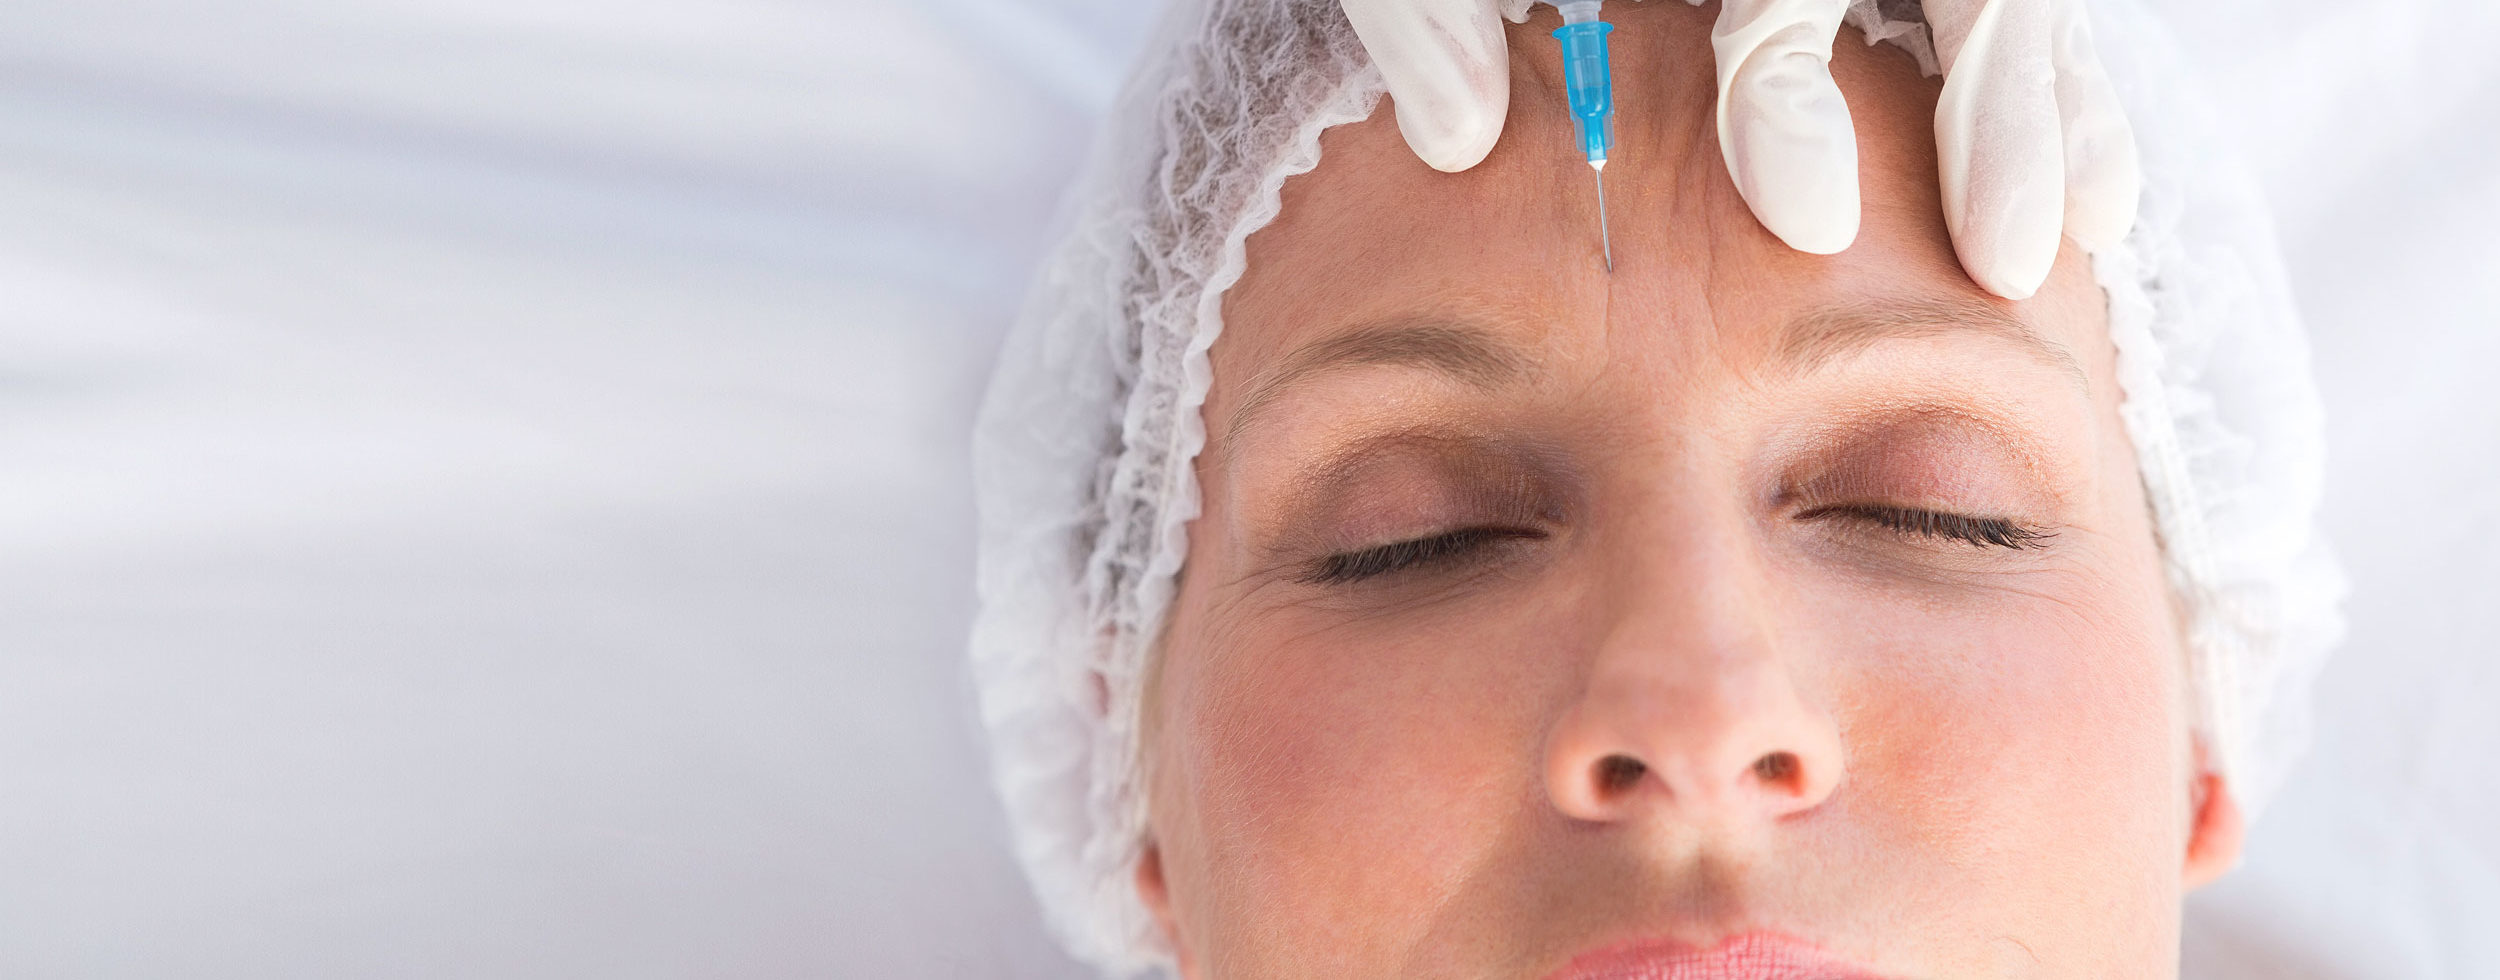 facial filler treatment for women